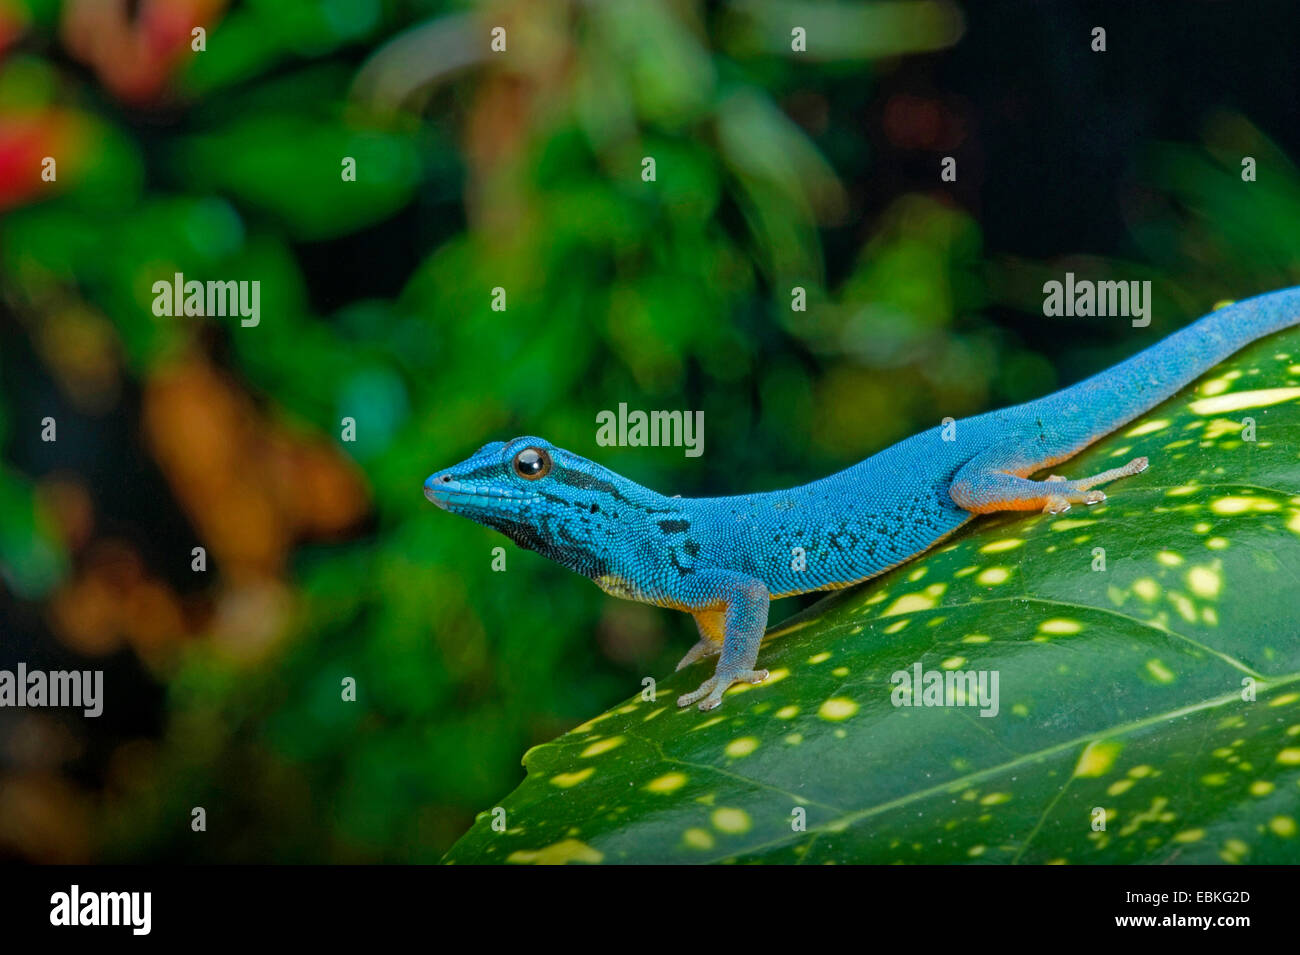 Azul eléctrico Gecko, Williams (Lygodactylus williamsi geco enano), hombres sentados en una planta Foto de stock